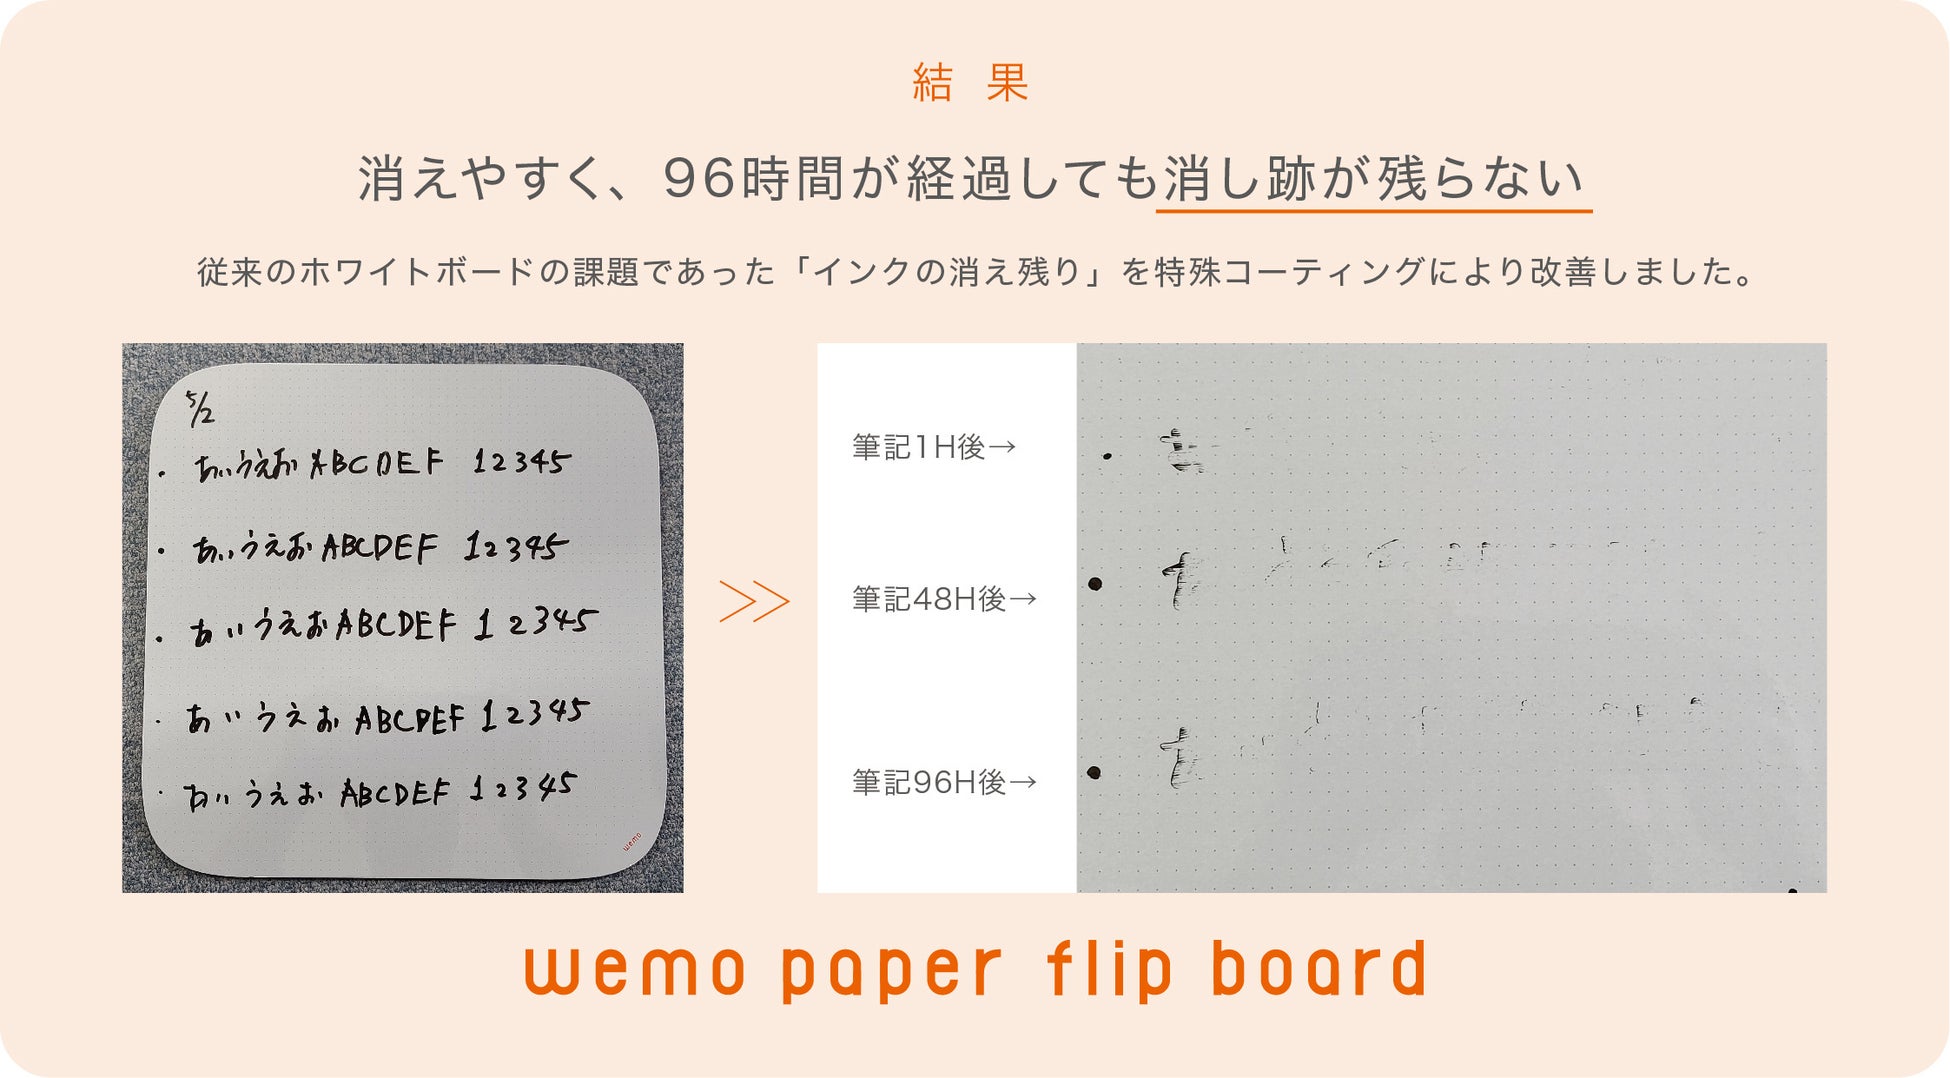 第31回日本文具大賞 優秀賞受賞の紙製ホワイトボード！WEB会議のコミュニケーションロスを減らす、新発想の